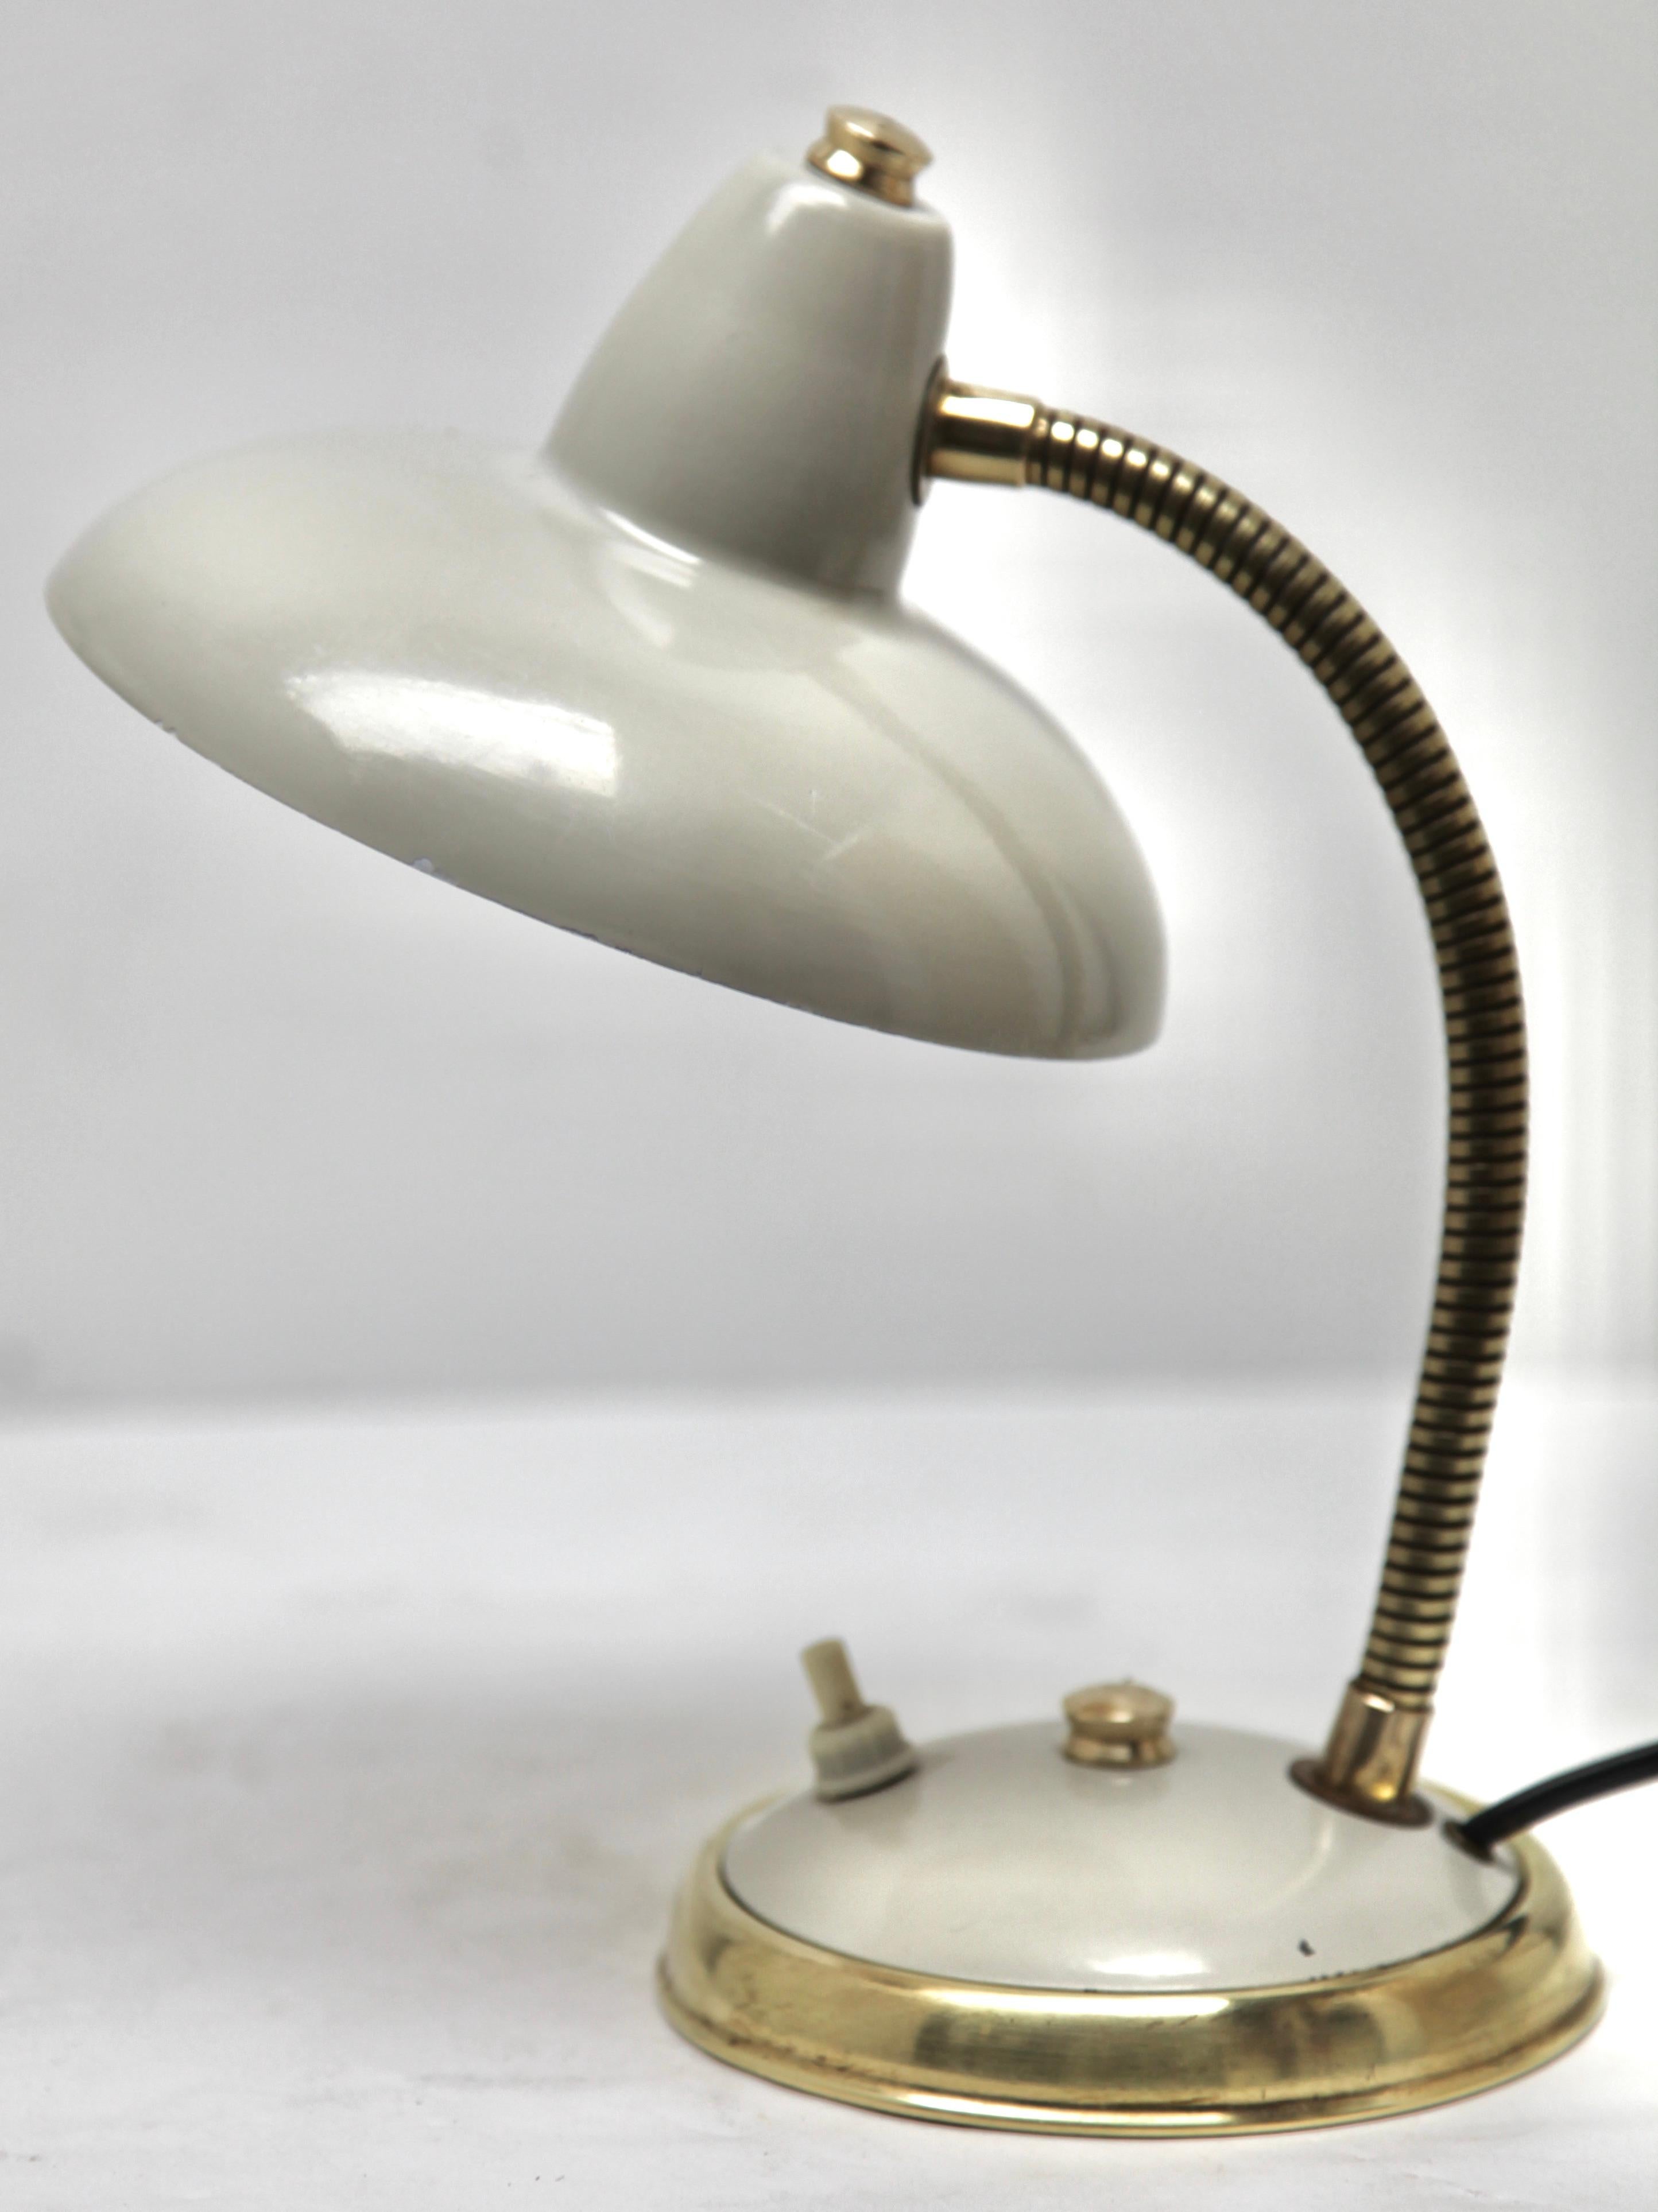 Lampe Aluminor des années 1950 Les lampes sont en très bon état.
Cette adorable lampe vintage peut se poser, sur un bureau, une table de chevet, un bout de canapé etc. Il est orientable à partir de son réflecteur et sa hauteur peut être réglée.